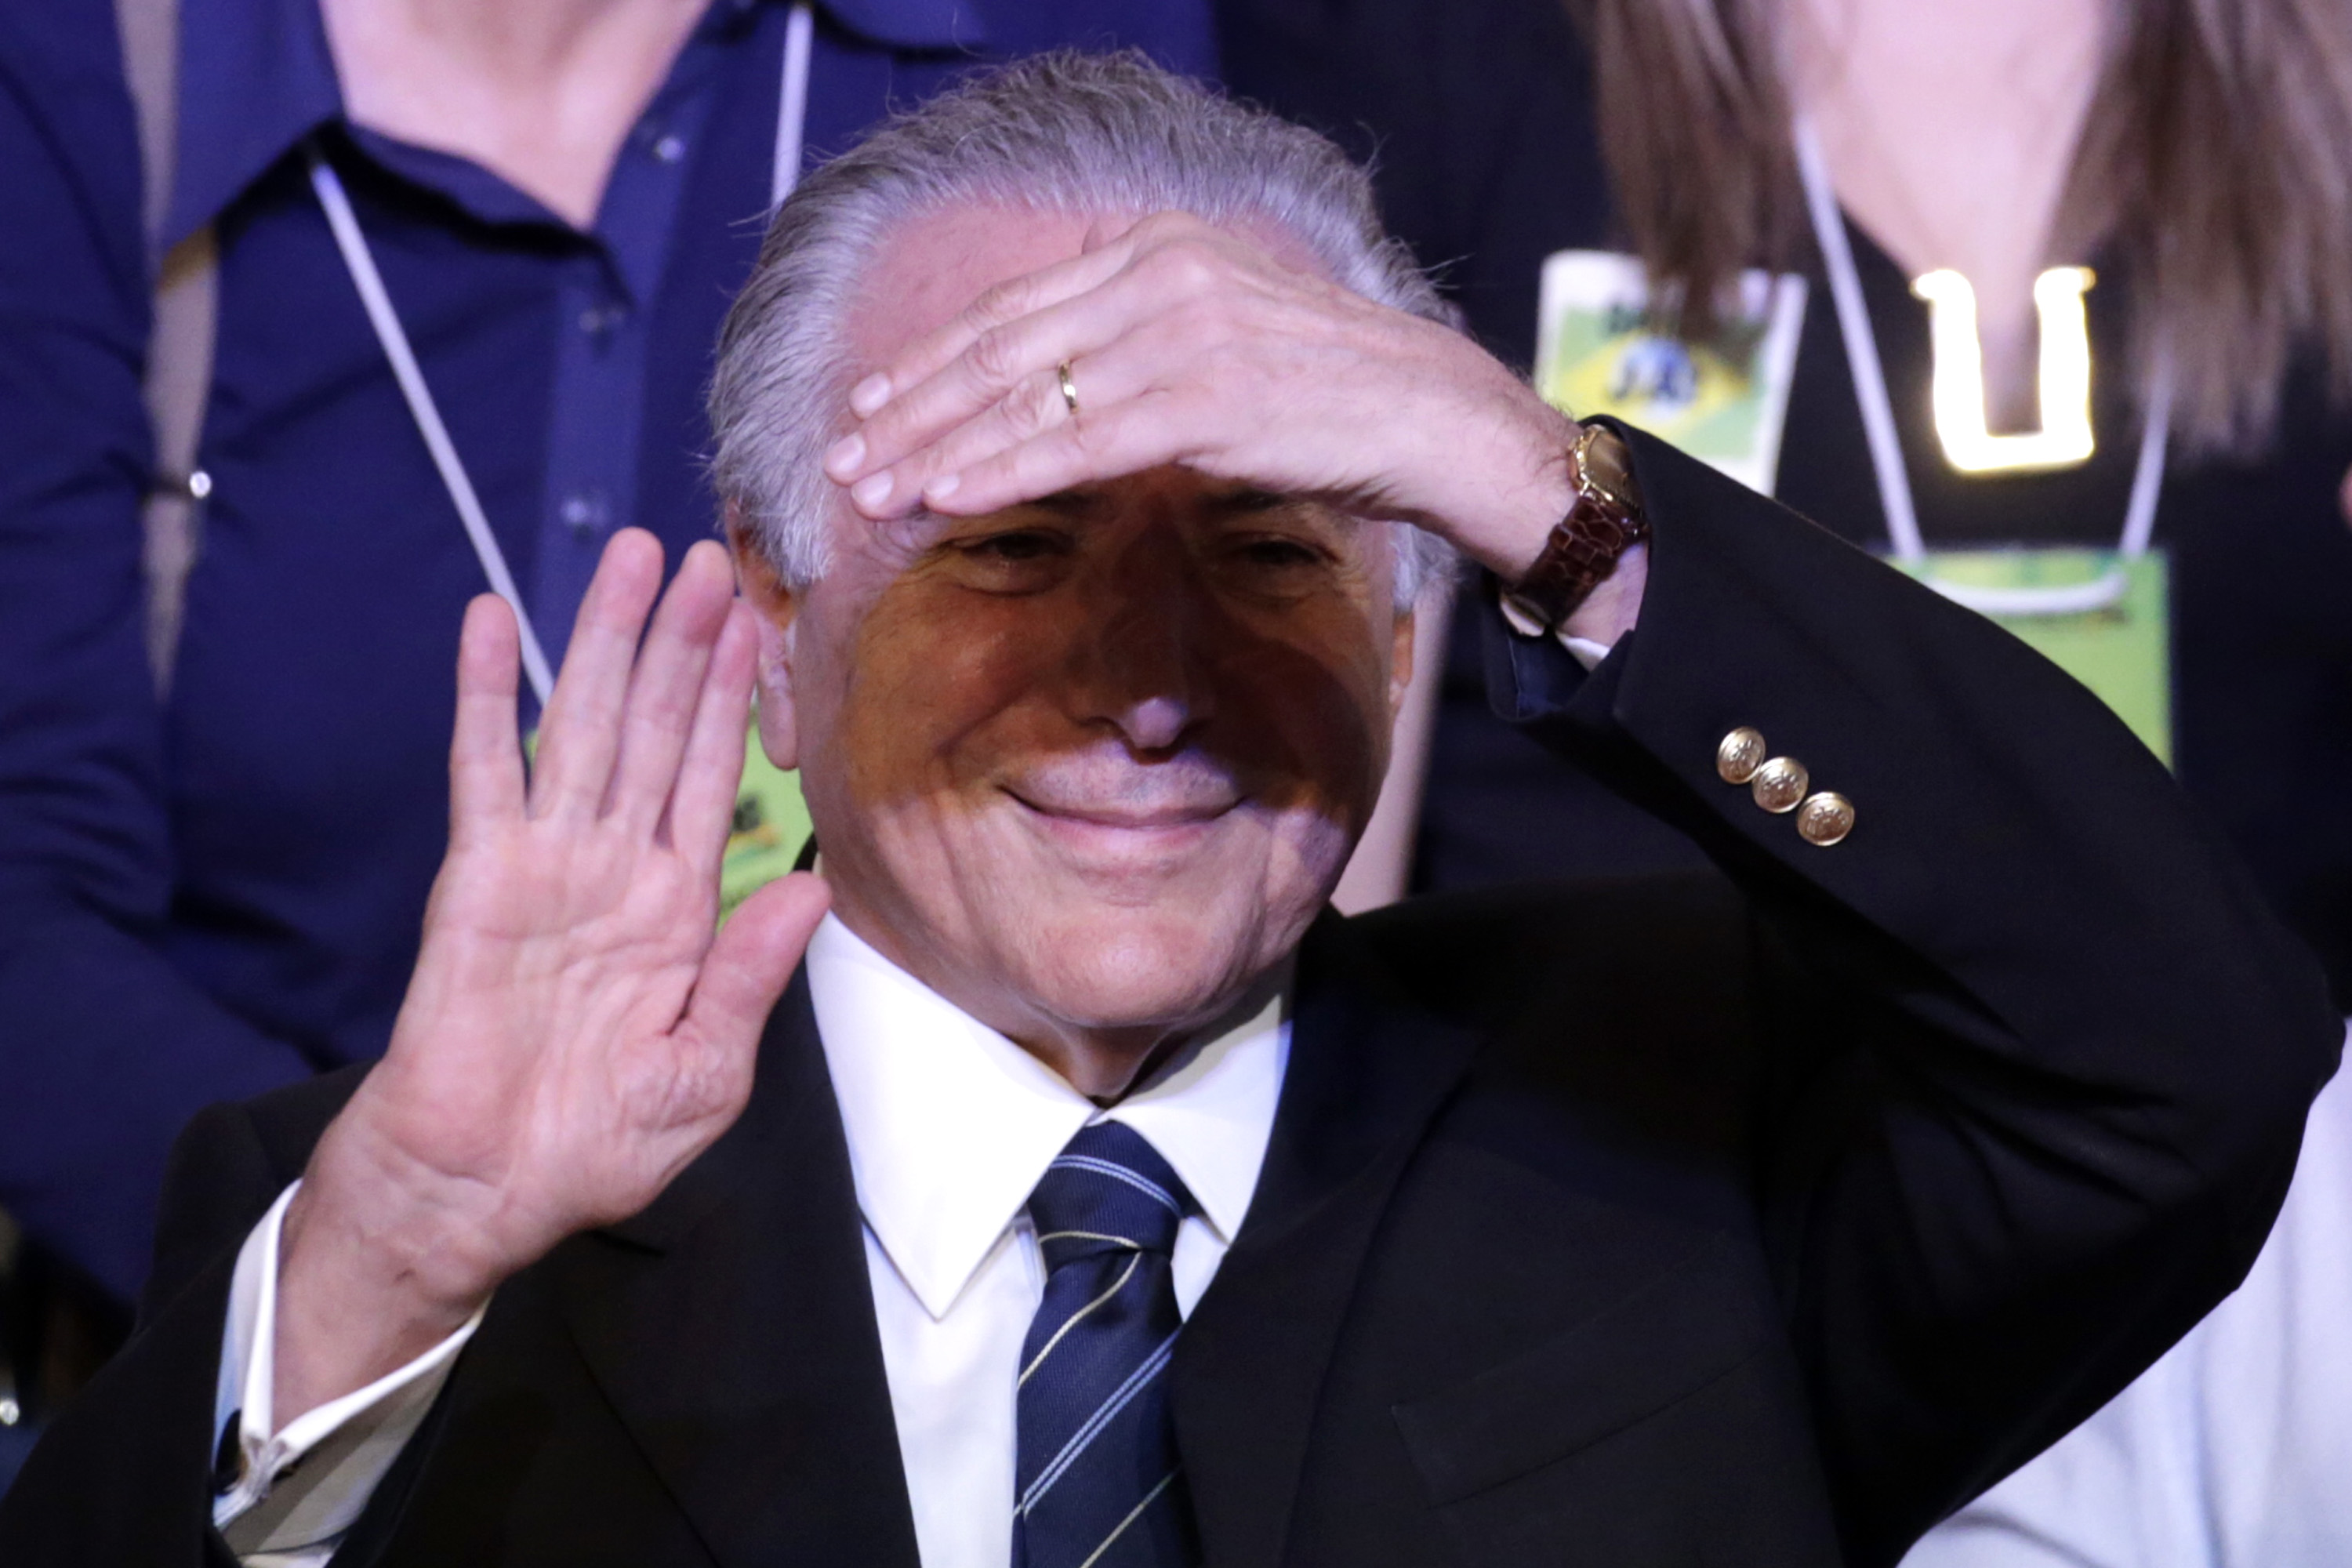 El vicepresidente de Brasil, Michel Temer, es una de las figuras políticas que impulsa el juicio político contra la mandataria Dilma Rousseff.